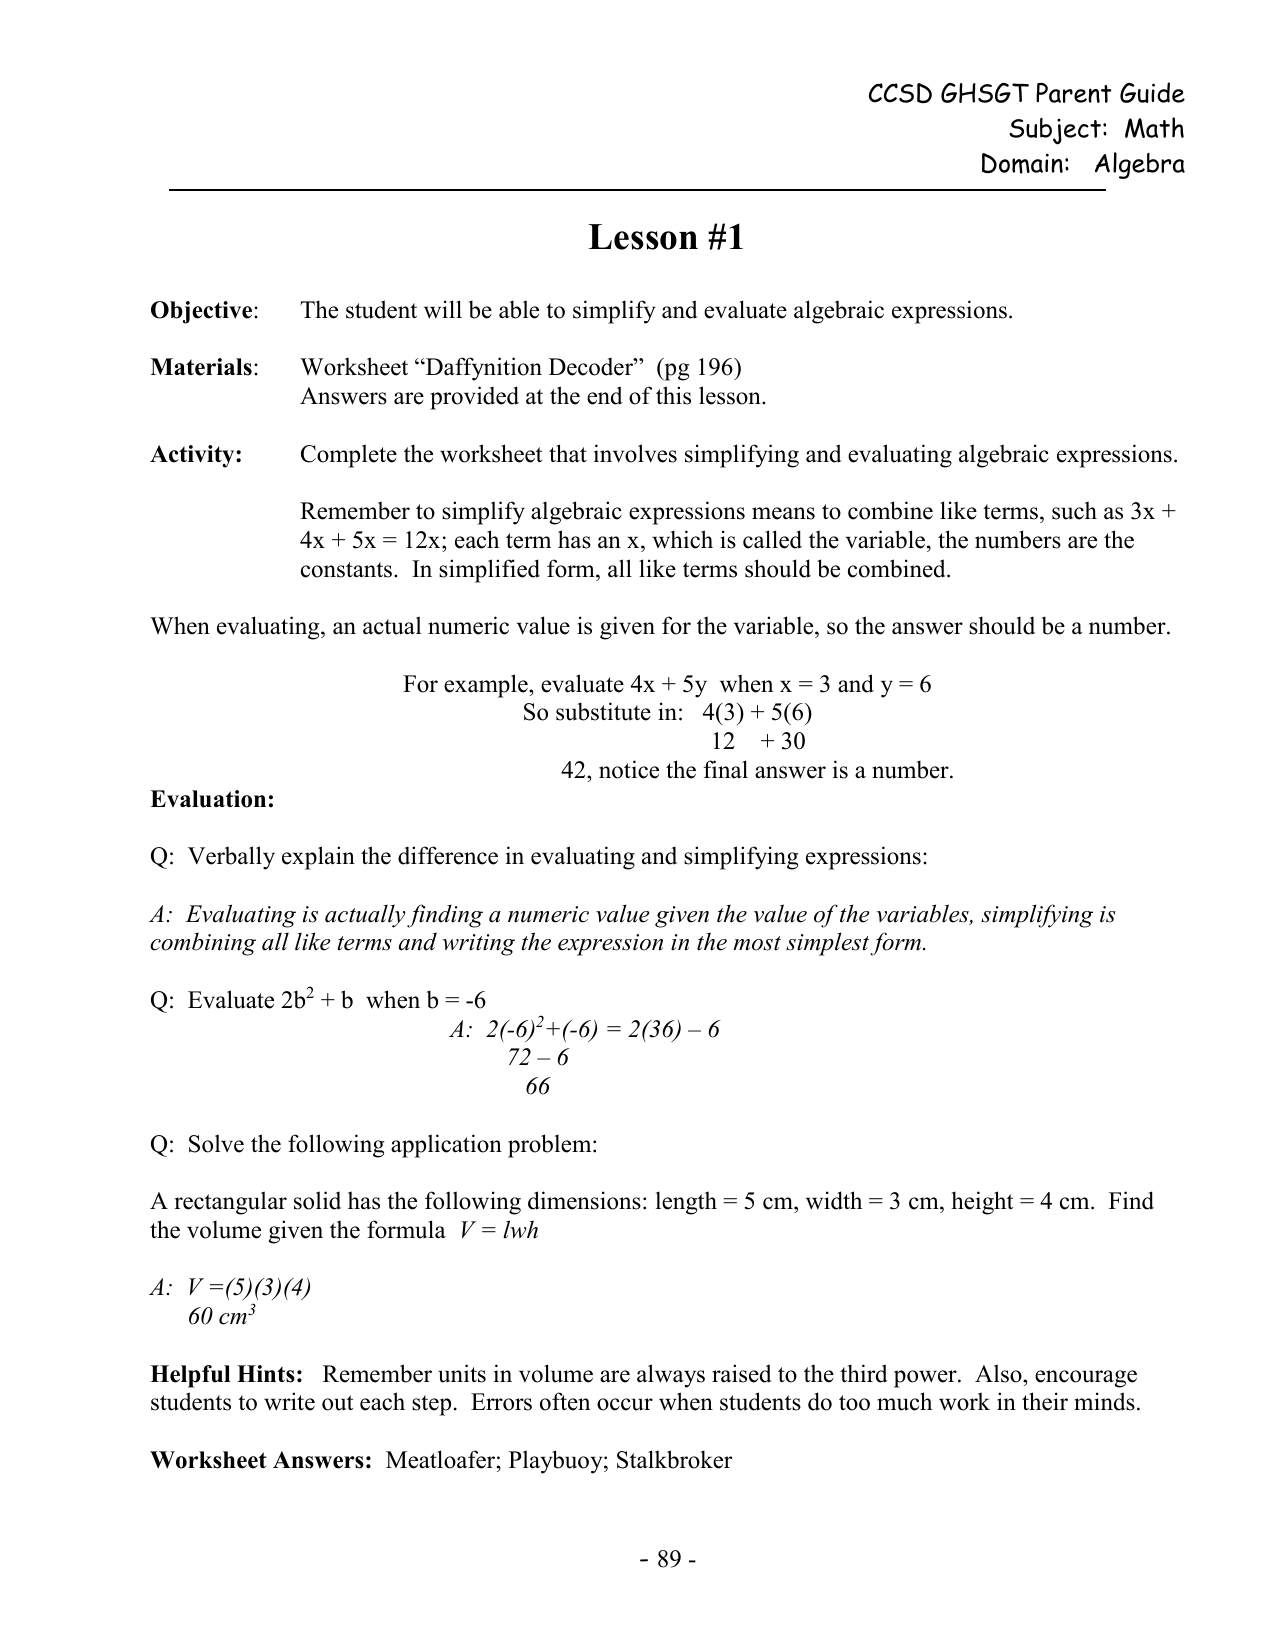 Daffynition Decoder Math Worksheet Answer Key — Villardigital Library